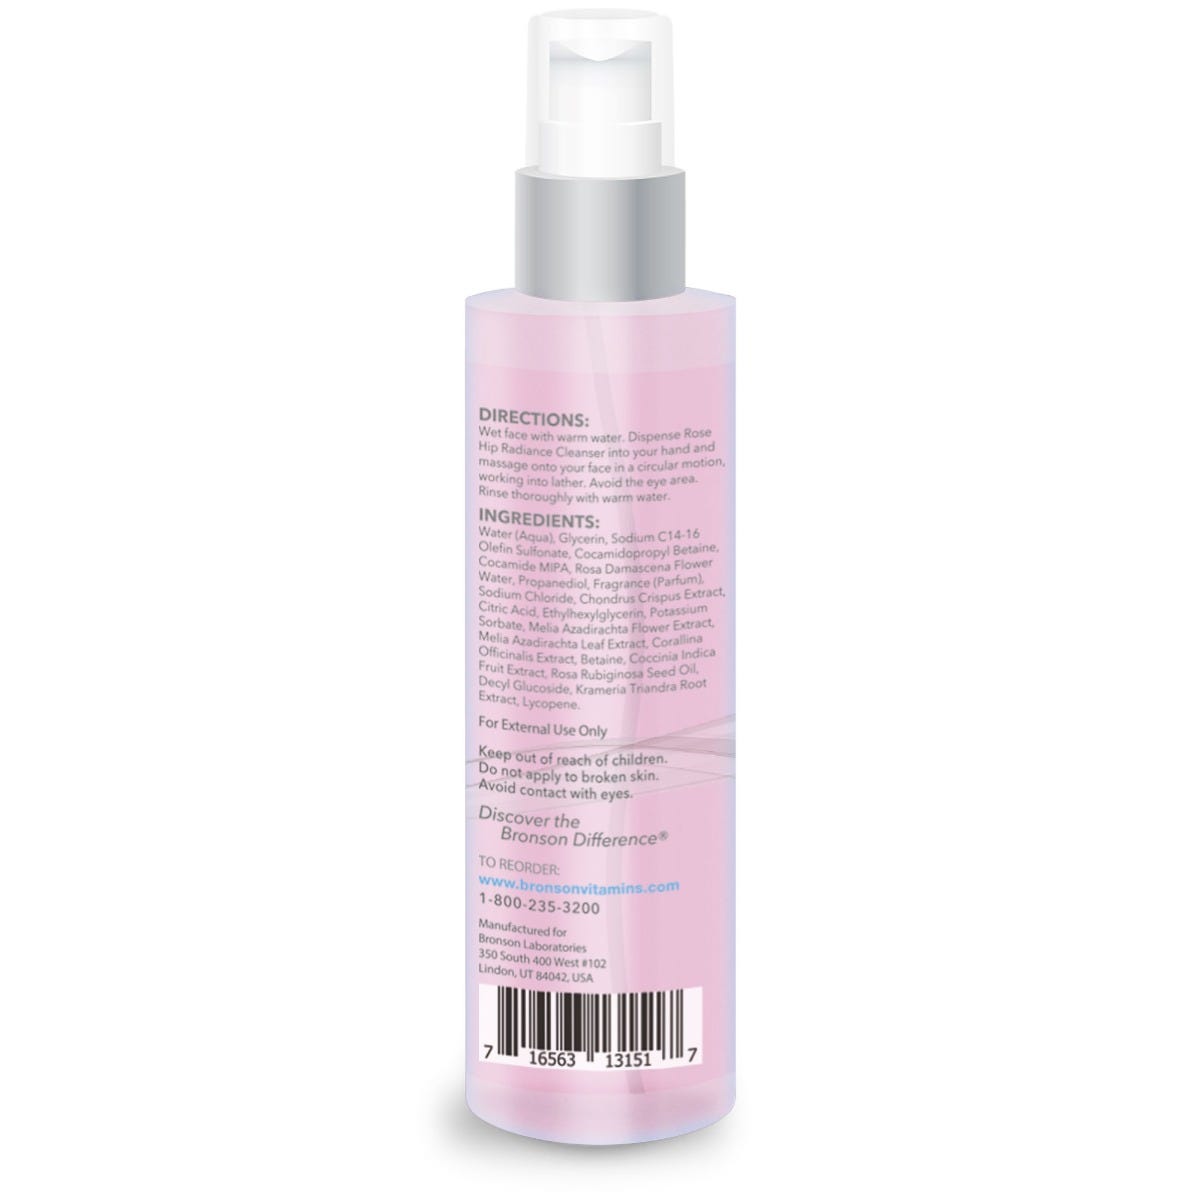 eblume® Rose Hip Radiance Cleanser Paraben Free, Non-GMO - 4 fl oz